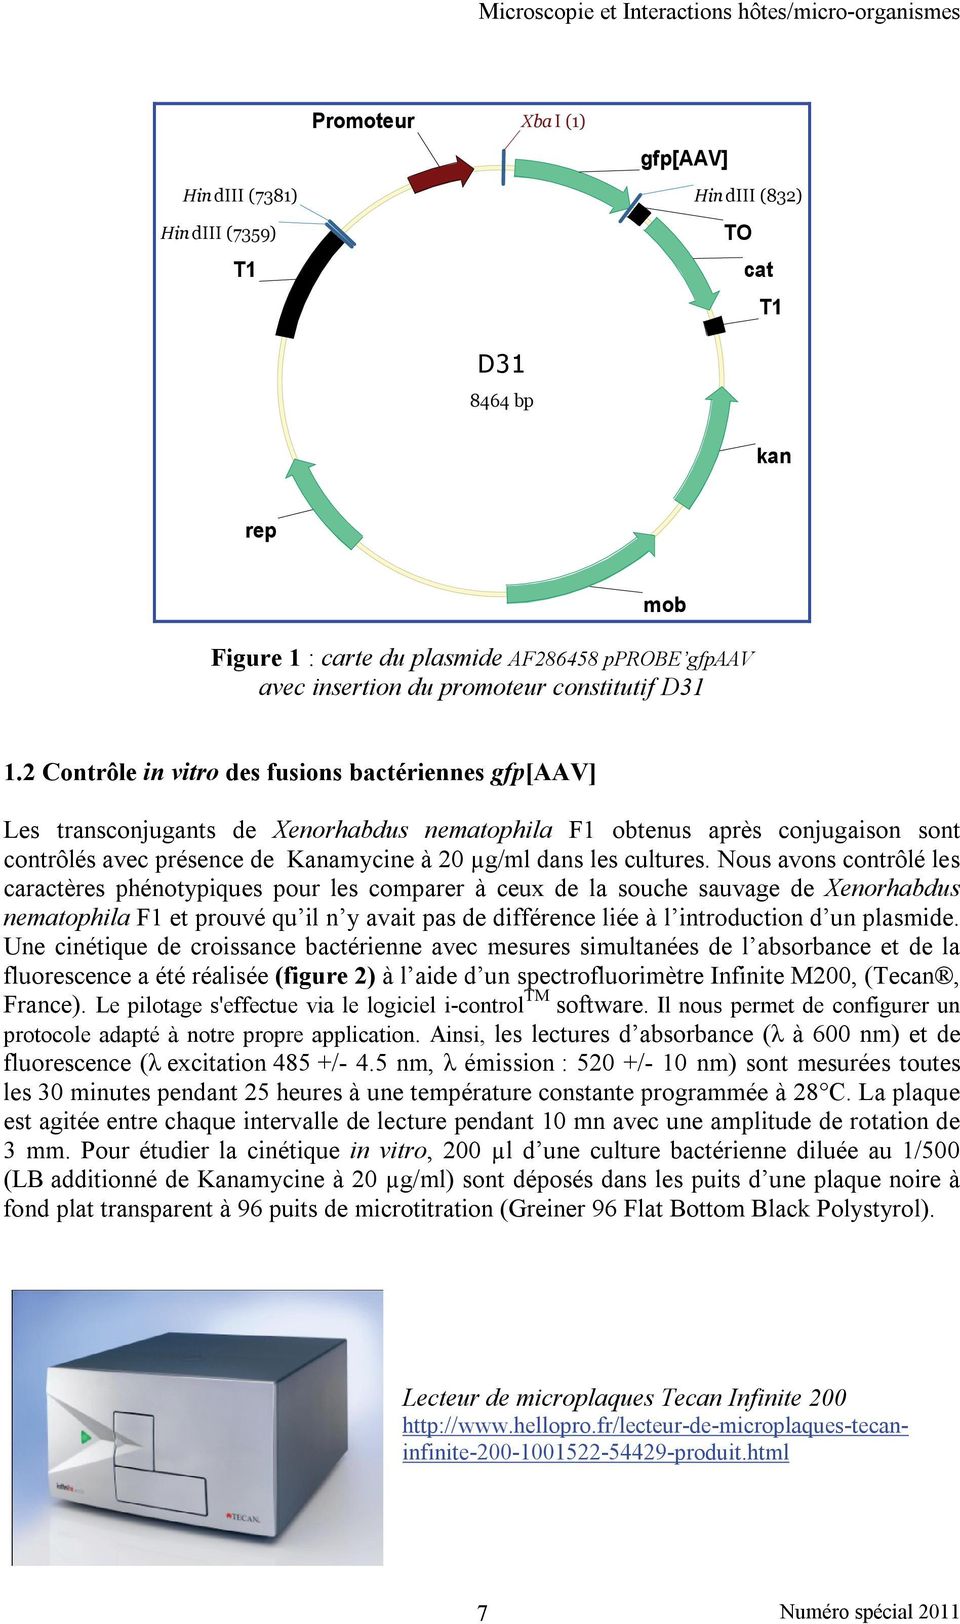 2 Contrôle in vitro des fusions bactériennes gfp[aav] Les transconjugants de Xenorhabdus nematophila F1 obtenus après conjugaison sont contrôlés avec présence de Kanamycine à 20 µg/ml dans les